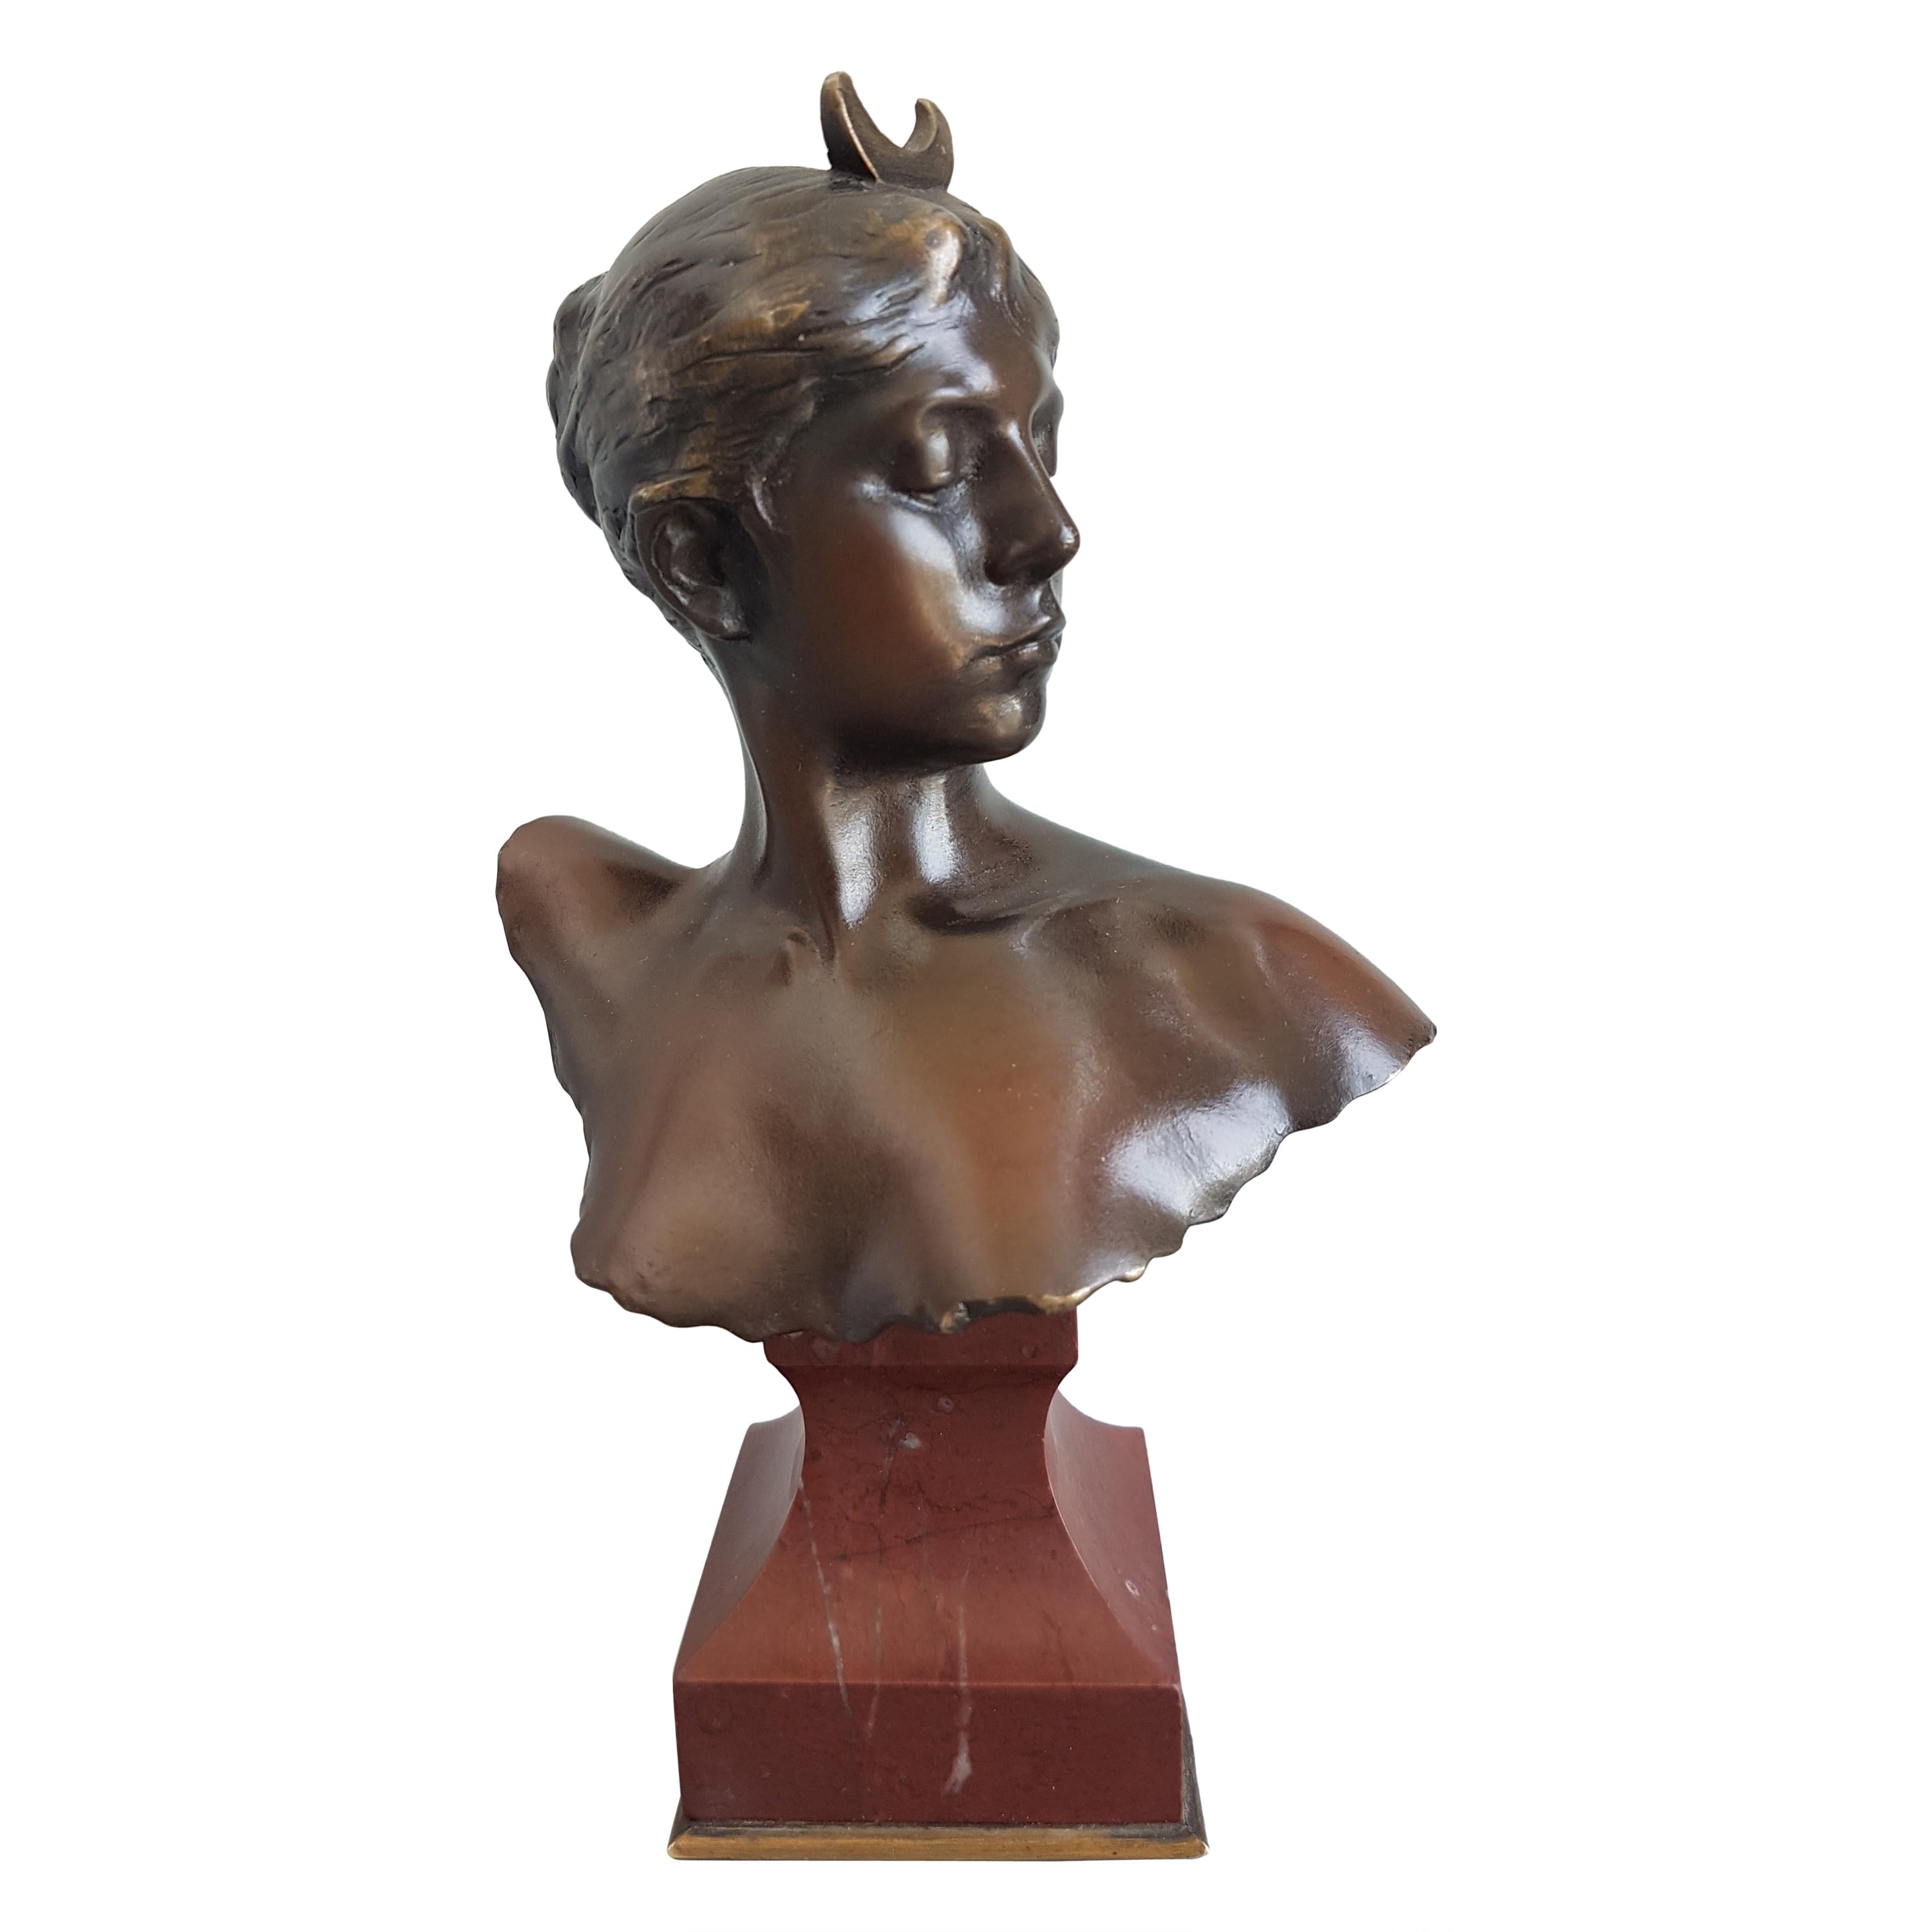 Buste de Diane en bronze de style Art nouveau français signé par Alexandre Falguiere